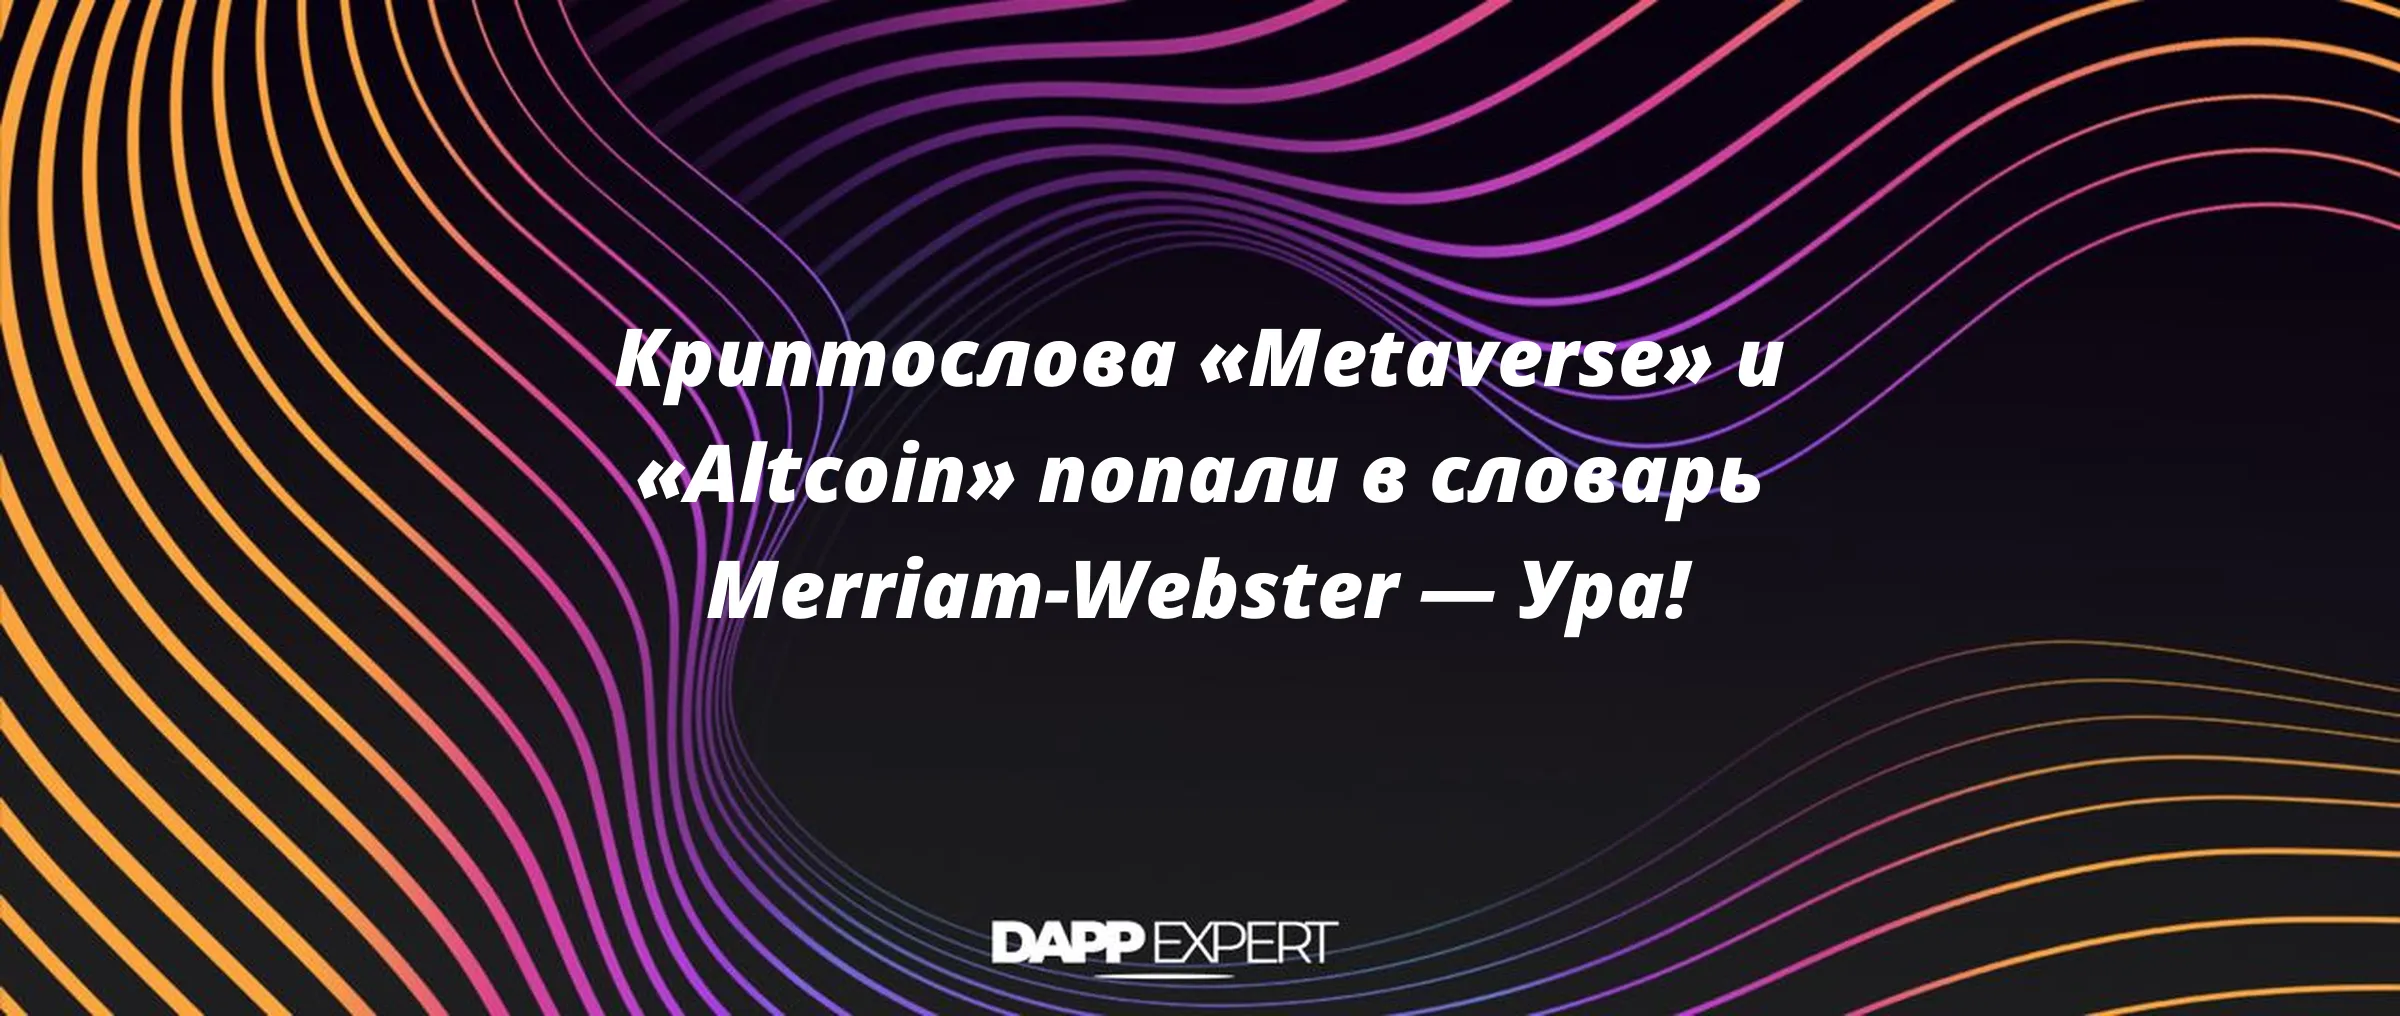 Криптослова «Metaverse» и «Altcoin» попали в словарь Merriam-Webster — Ура!